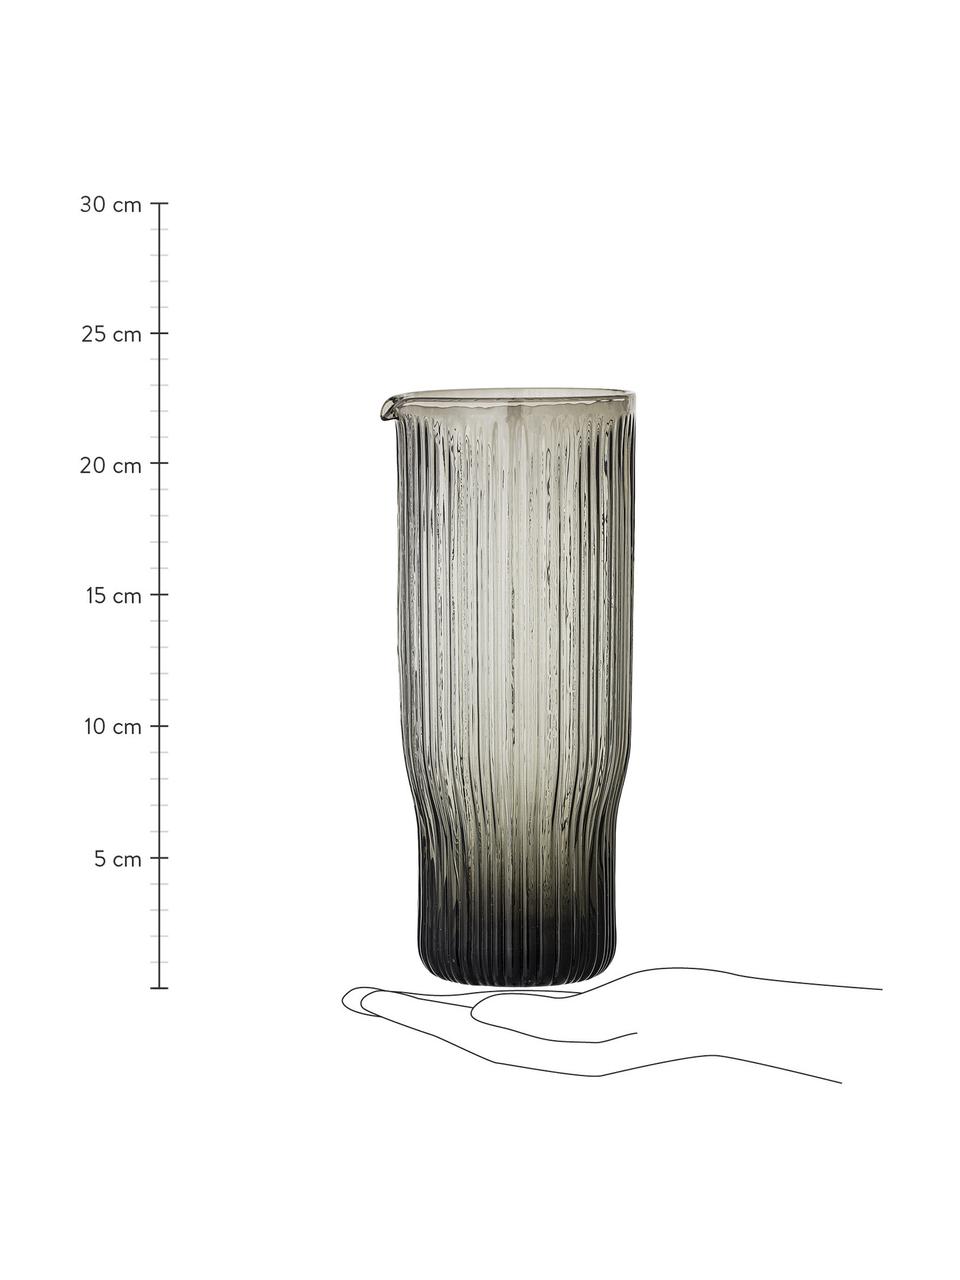 Waterkaraf Ronja met groefreliëf, 1 L, Glas, Grijs, H 23 cm, 1 L